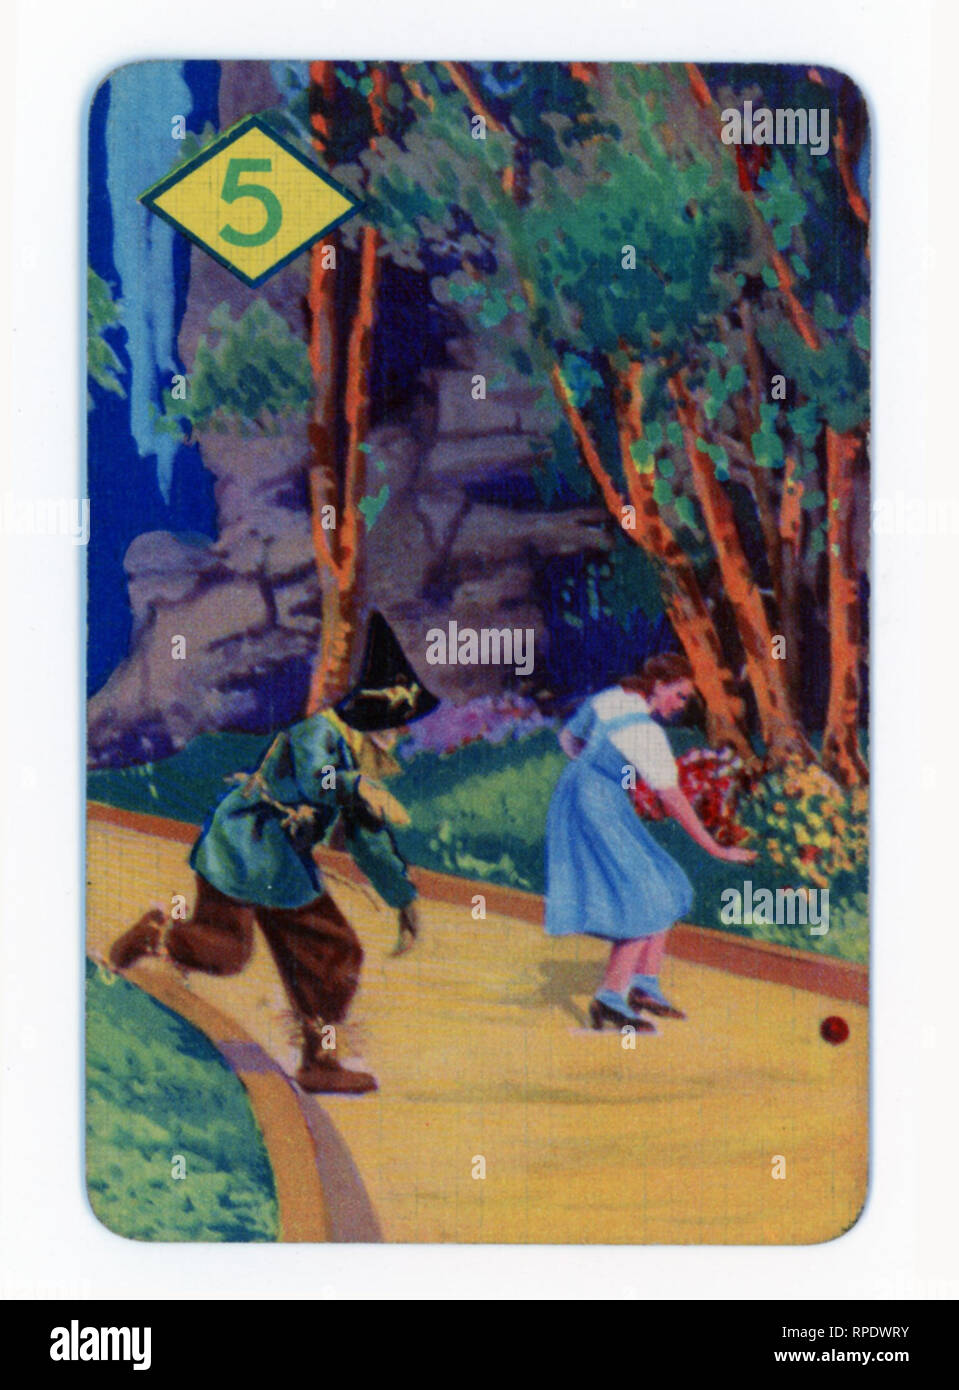 Der Zauberer von Oz Kartenspiel in London im Jahre 1940 produziert von Castell Brothers Ltd., (Pepys Marke) mit der Einführung der MGM film in Großbritannien in diesem Jahr überein Stockfoto